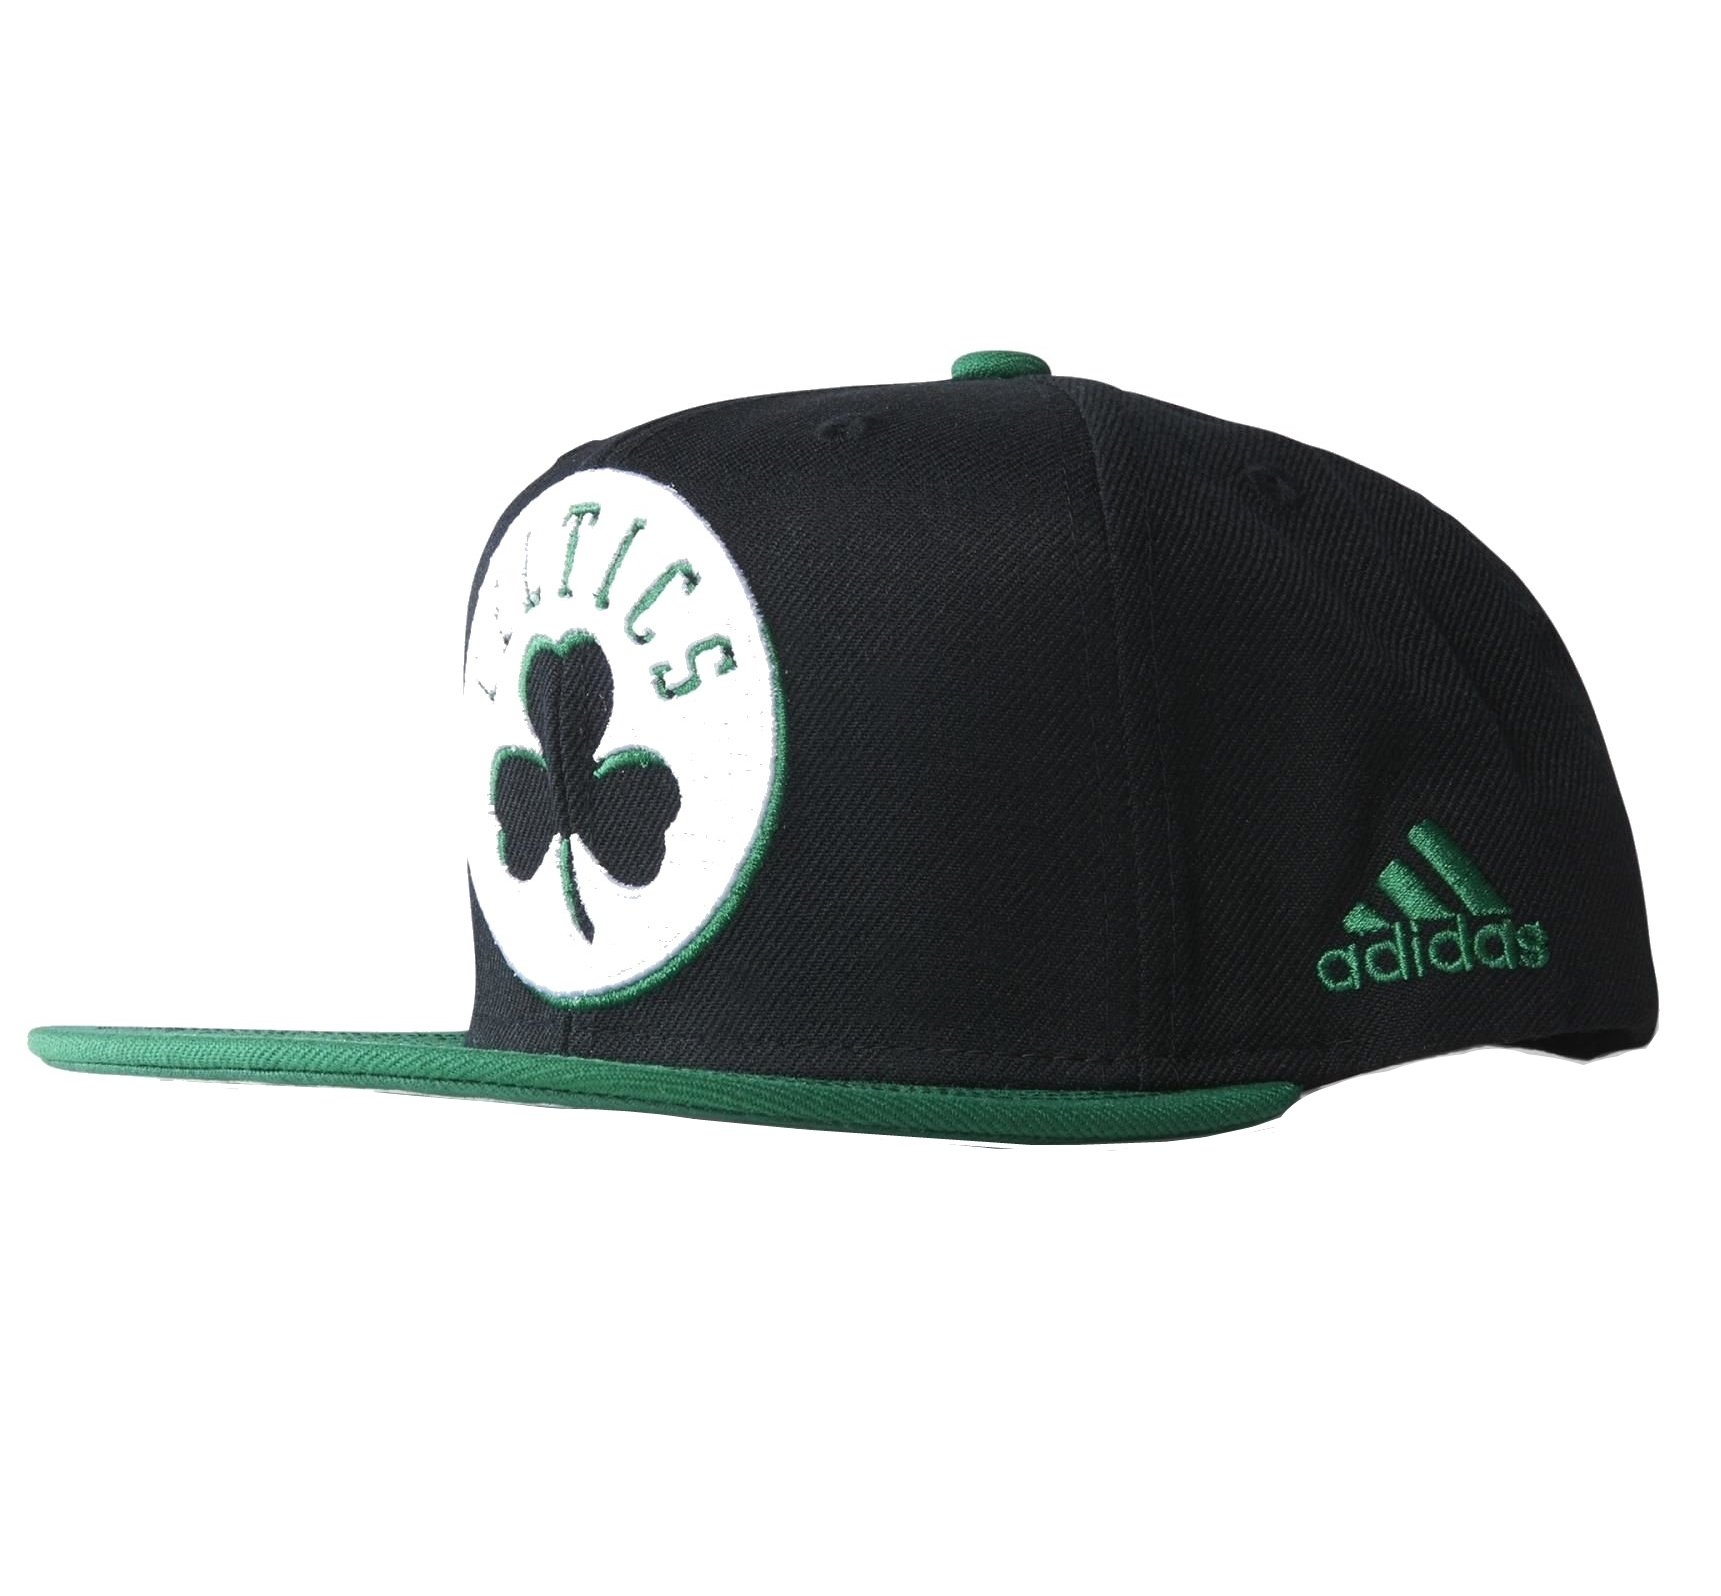 Sinceramente volatilidad Consejos Adidas NBA Gorra Boston Celtics (negro/verde/blanco)